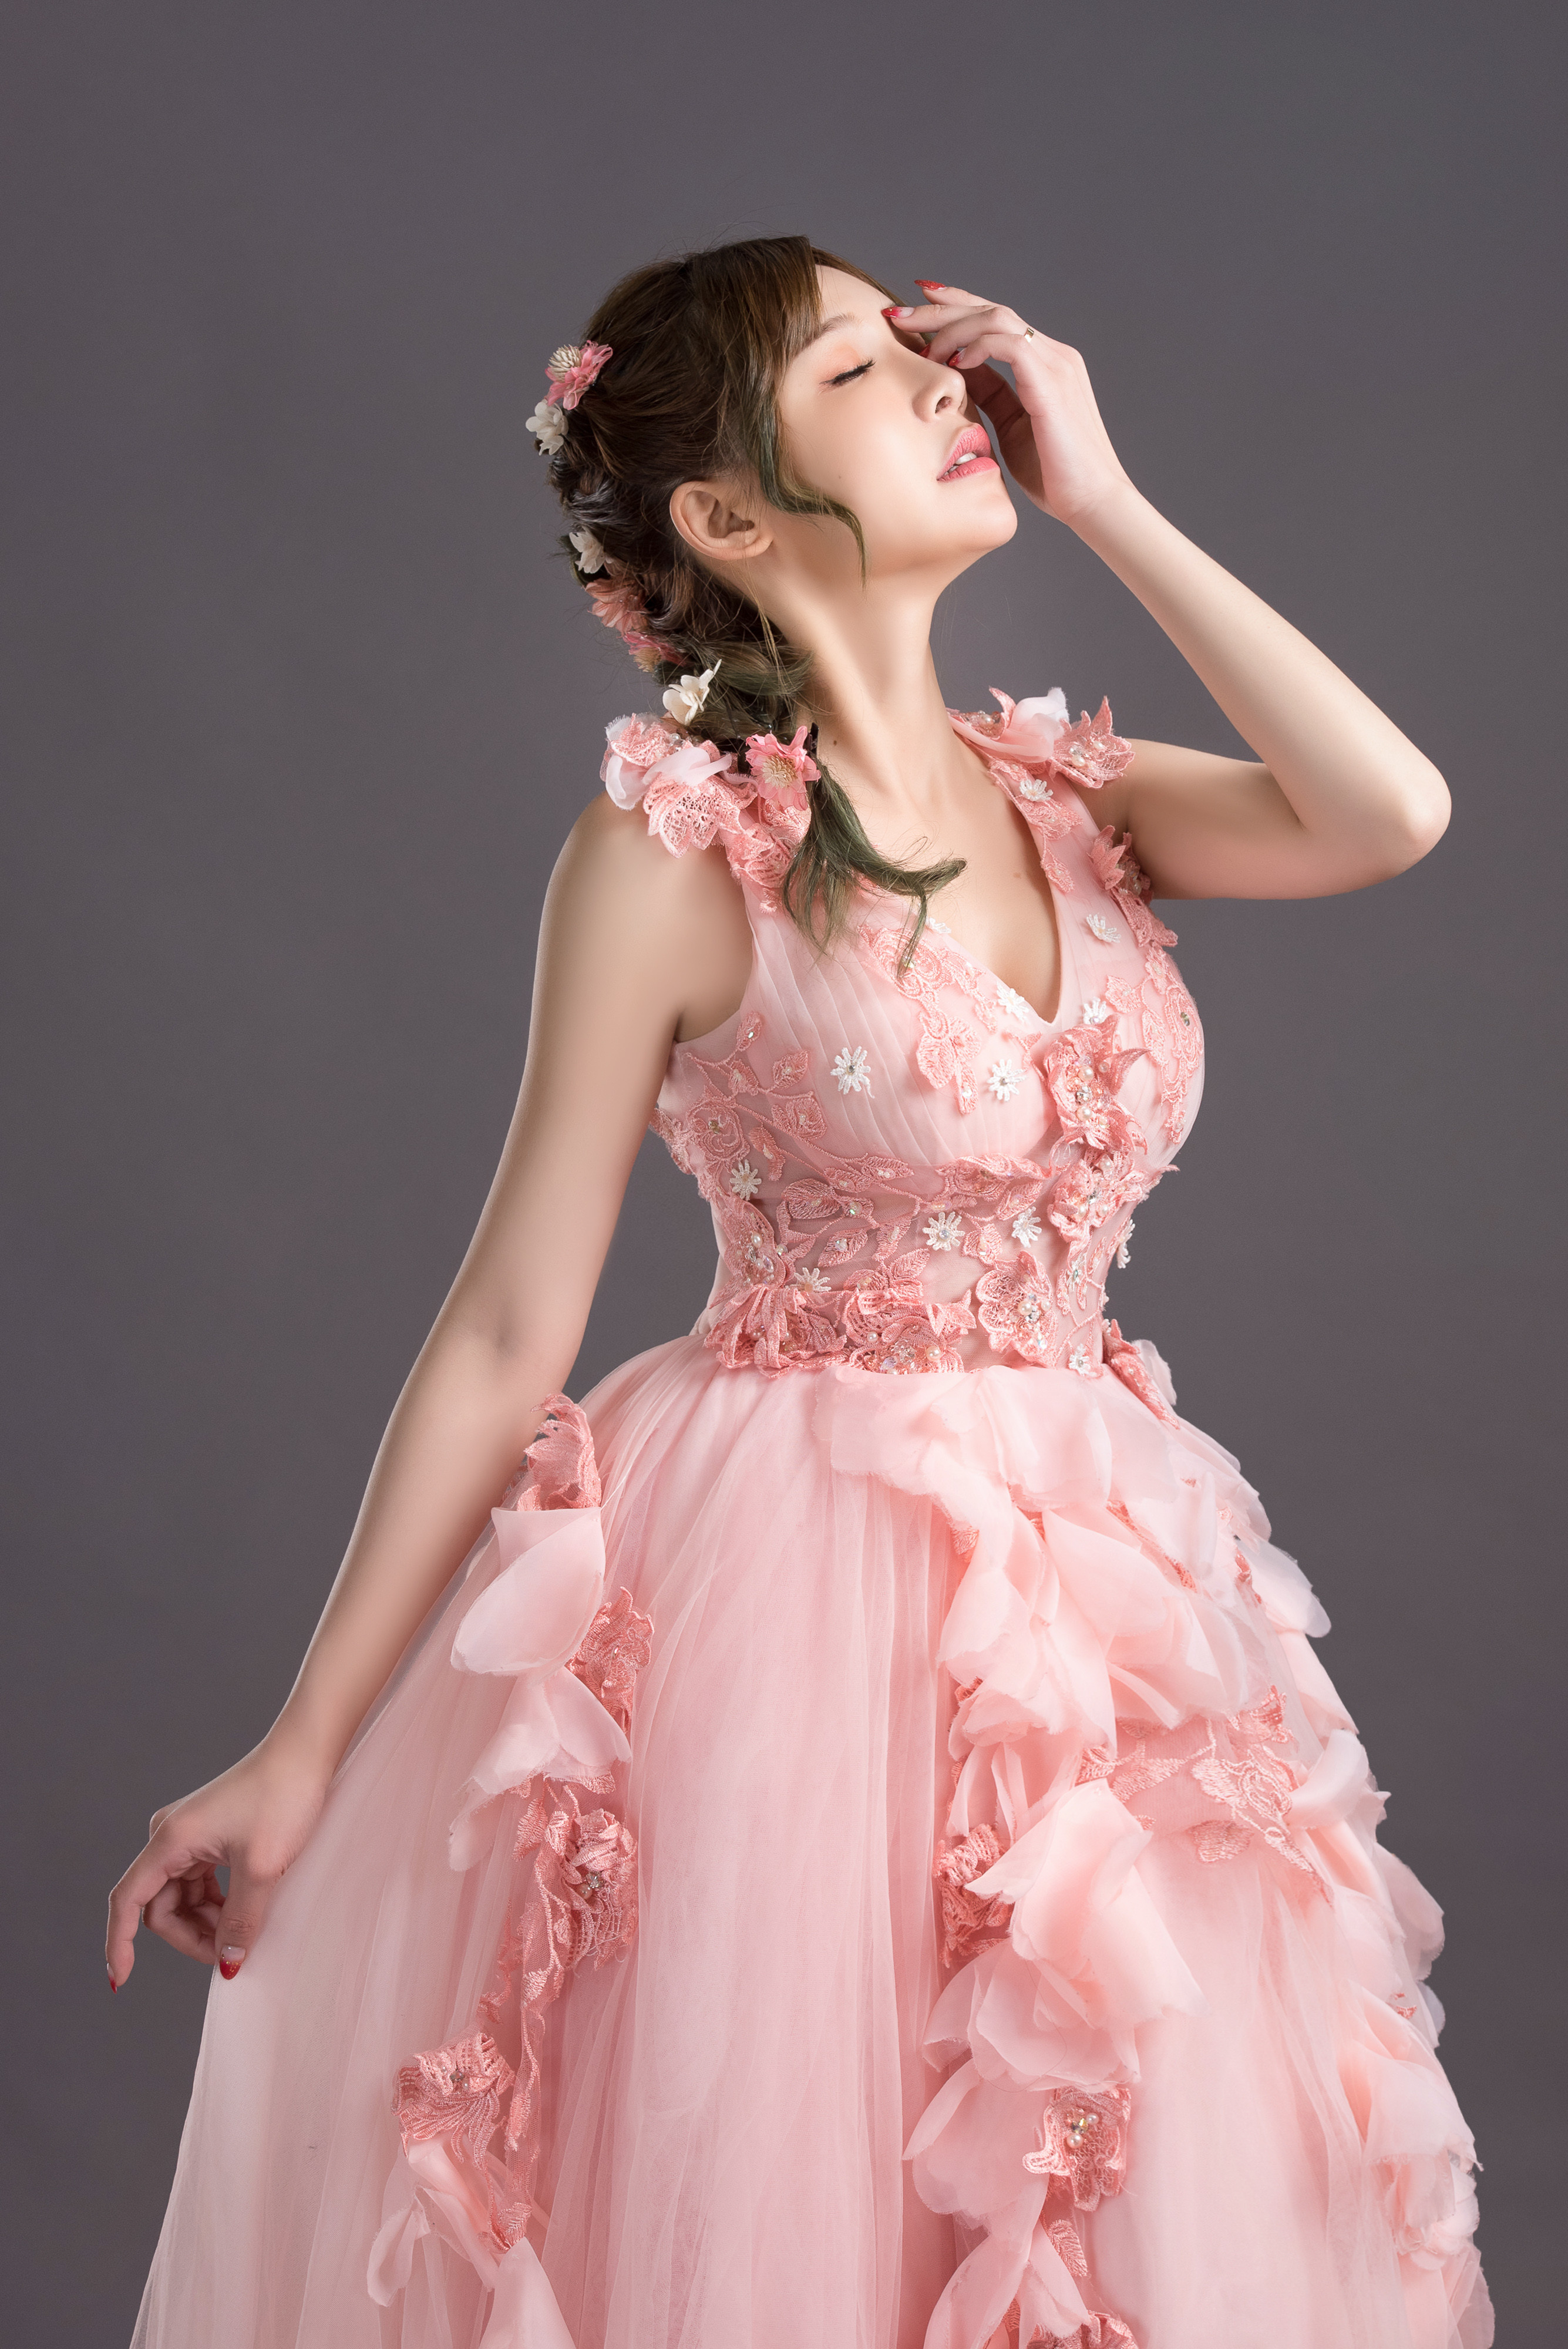 壁紙 2670x4000 アジア人 花嫁 ドレス ピンク 髪型 手 ポーズ 少女 ダウンロード 写真